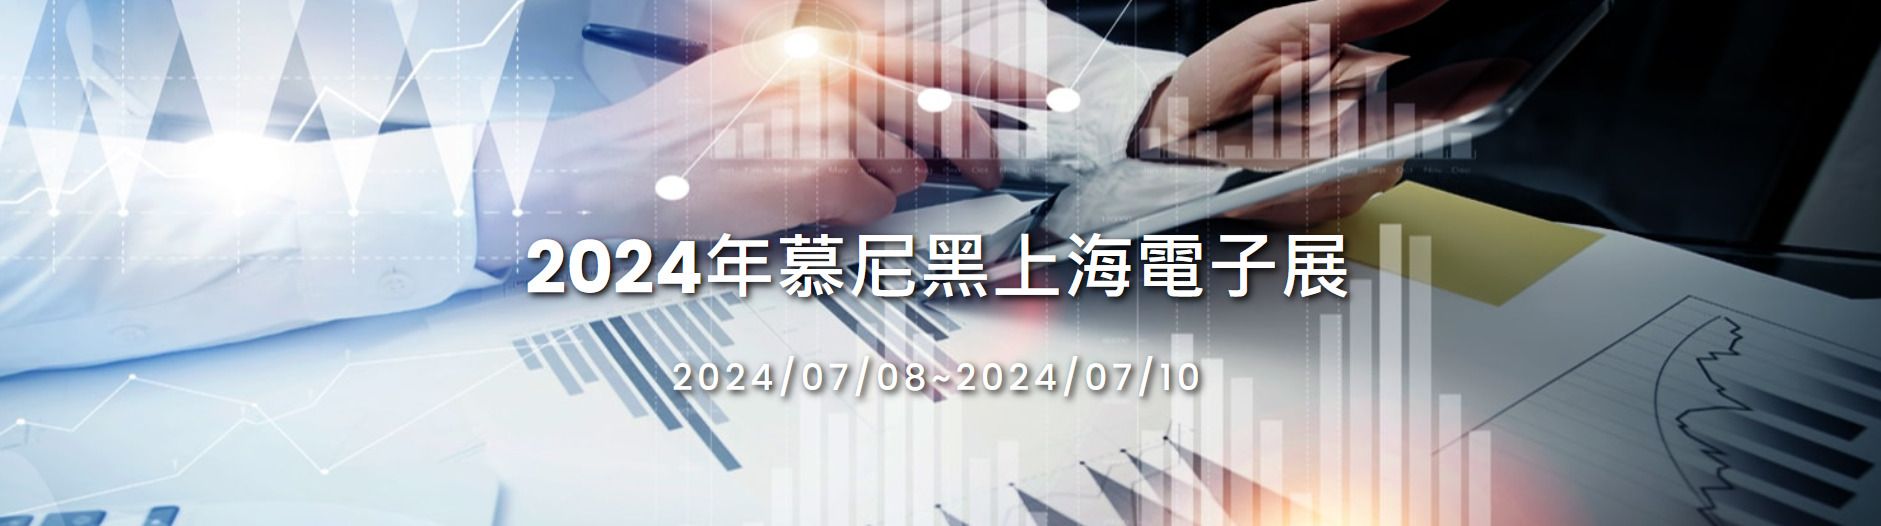 JCON Asista a Electronica China en 2024